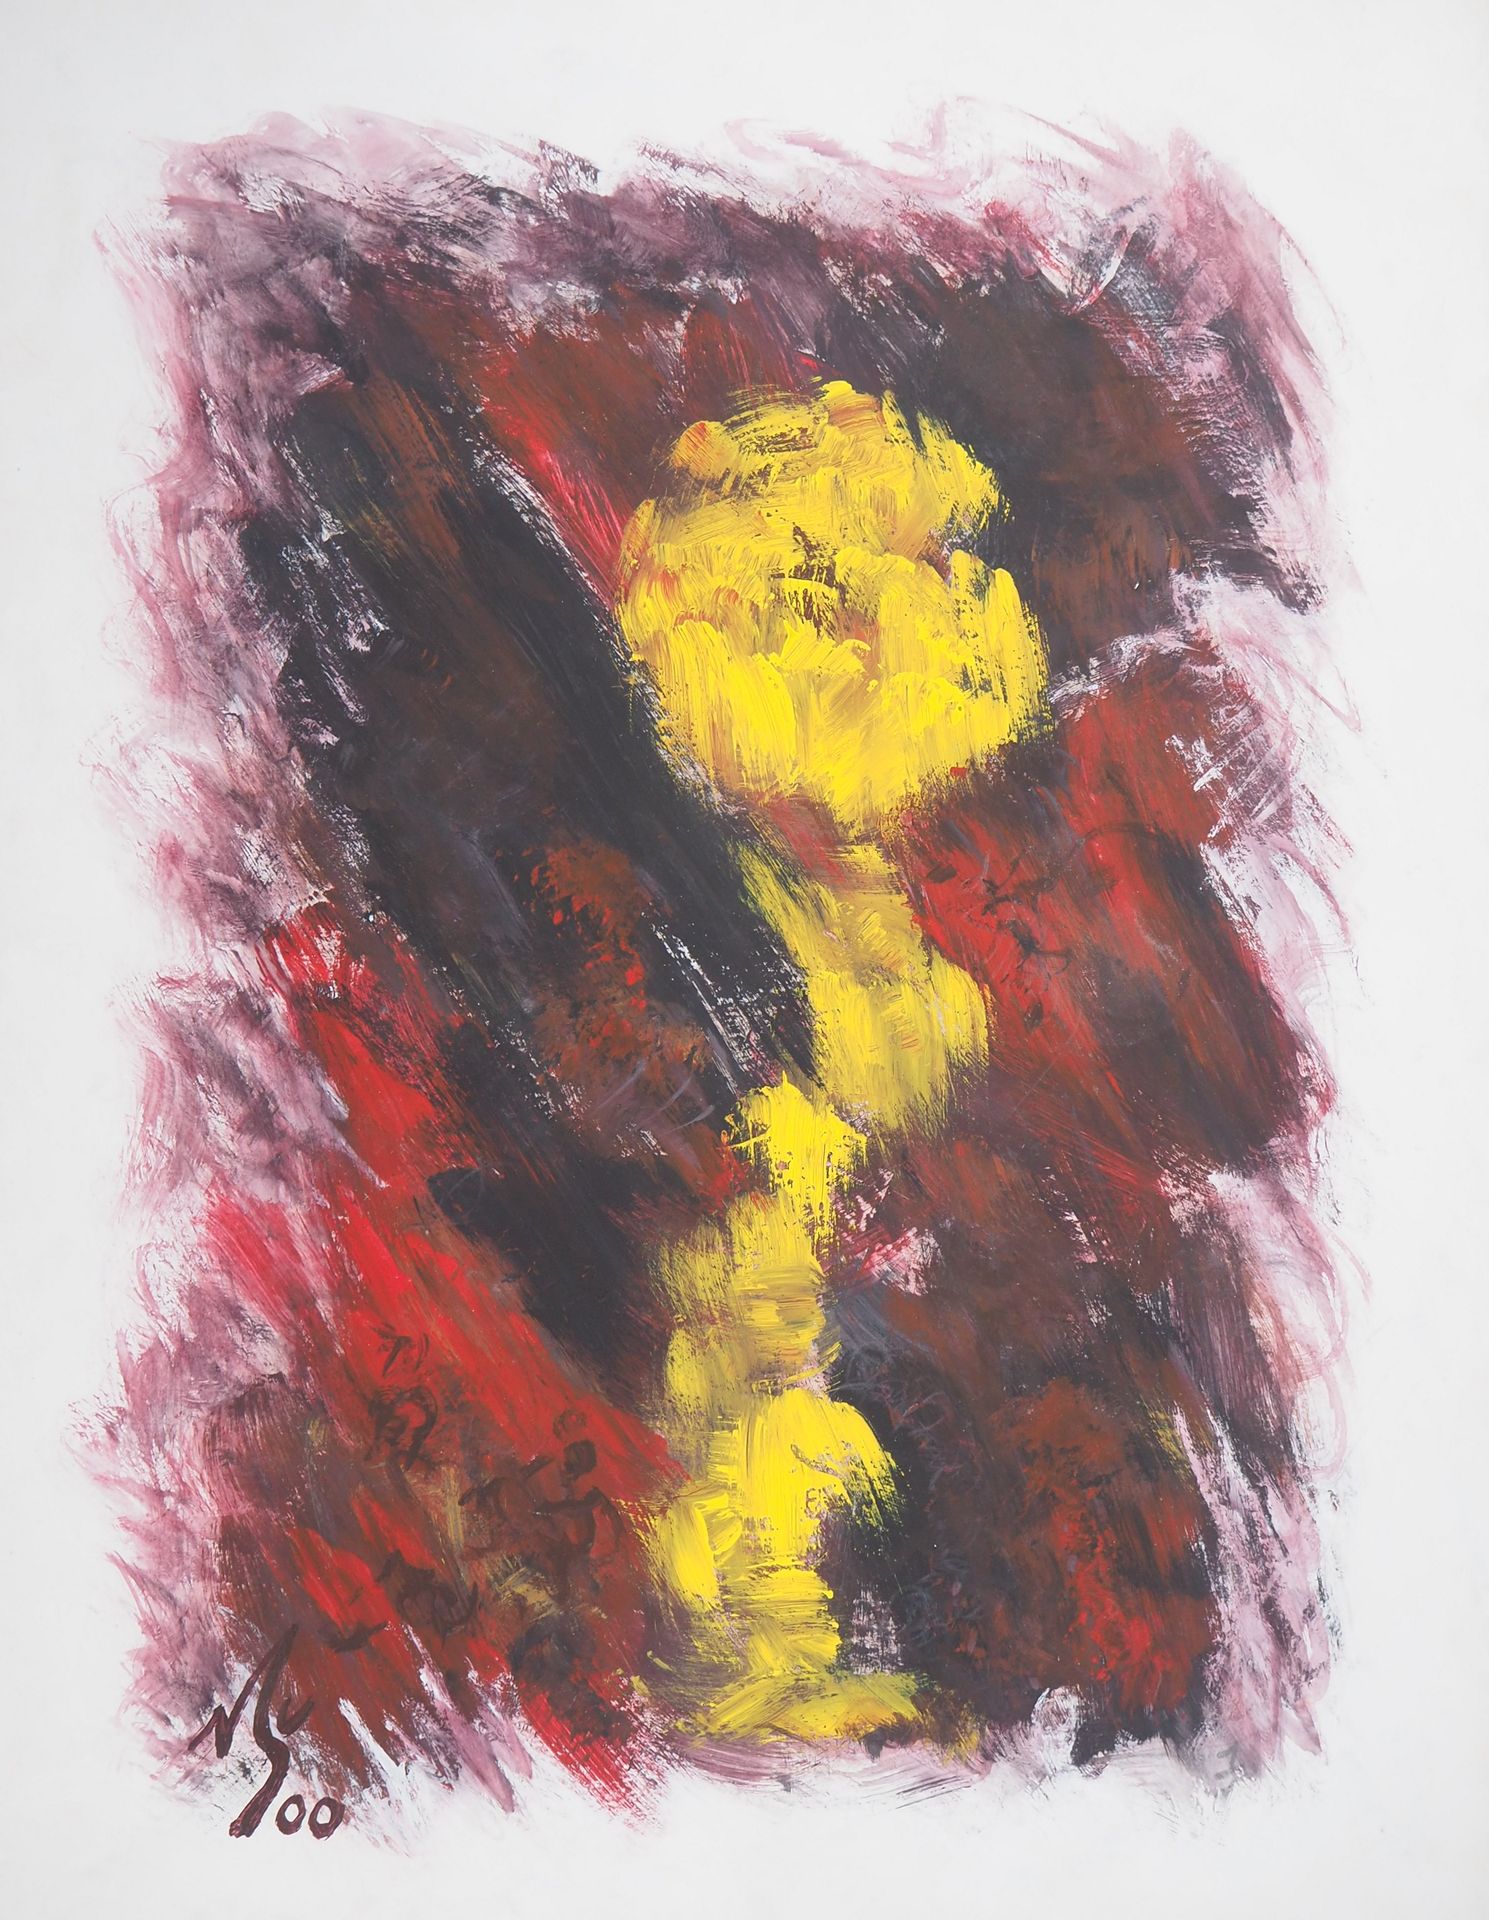 Michel GUIGNARD Michel Guignard

Fleur jaune dans un paysage fauve, 2000

Origin&hellip;